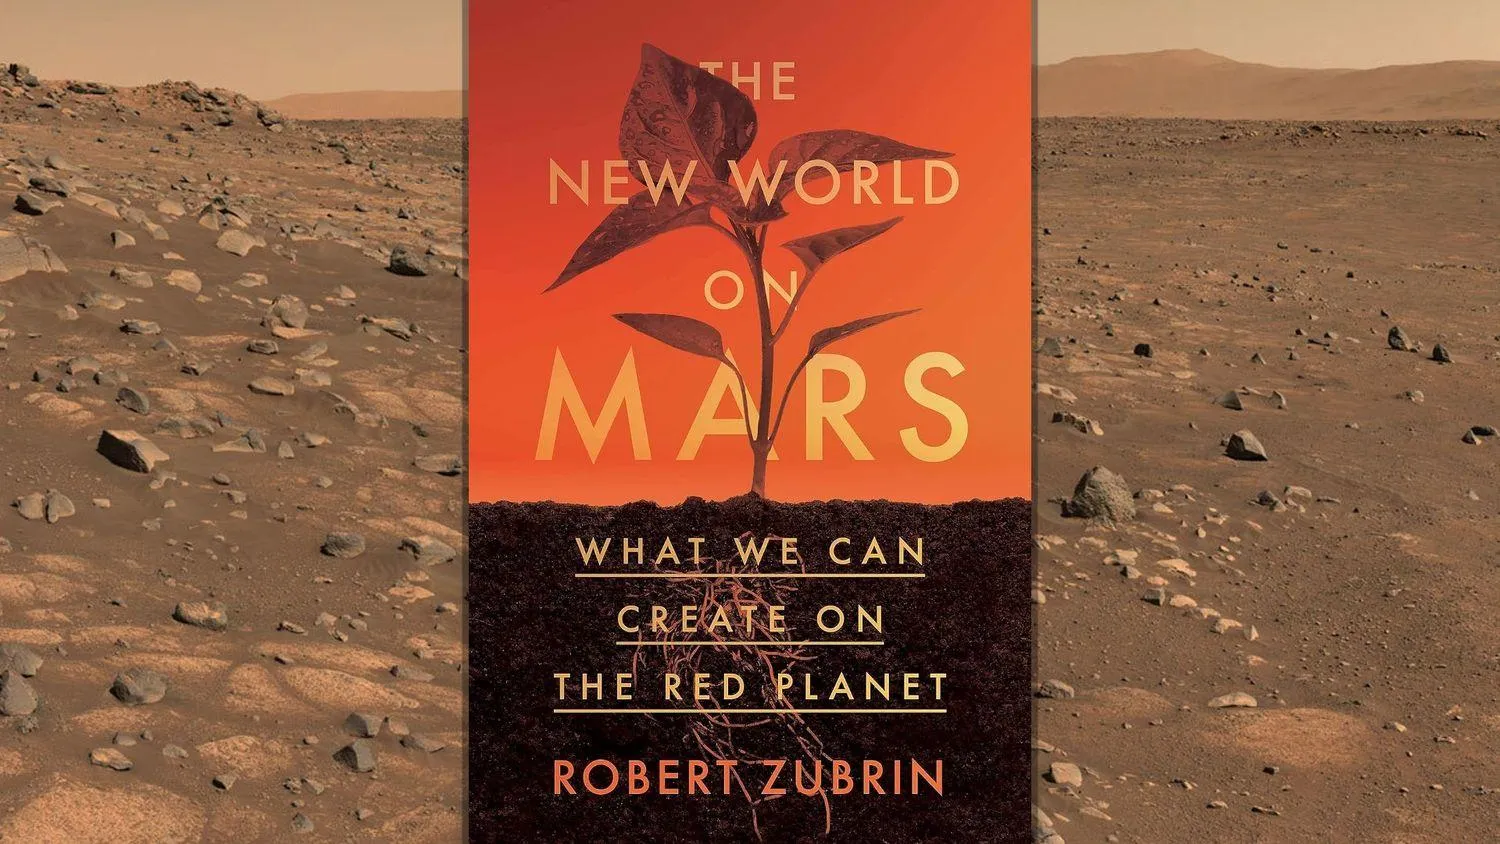 Mehr über den Artikel erfahren Die neue Welt auf dem Mars“ bietet einen Leitfaden für die Besiedlung des Roten Planeten (exklusiv)